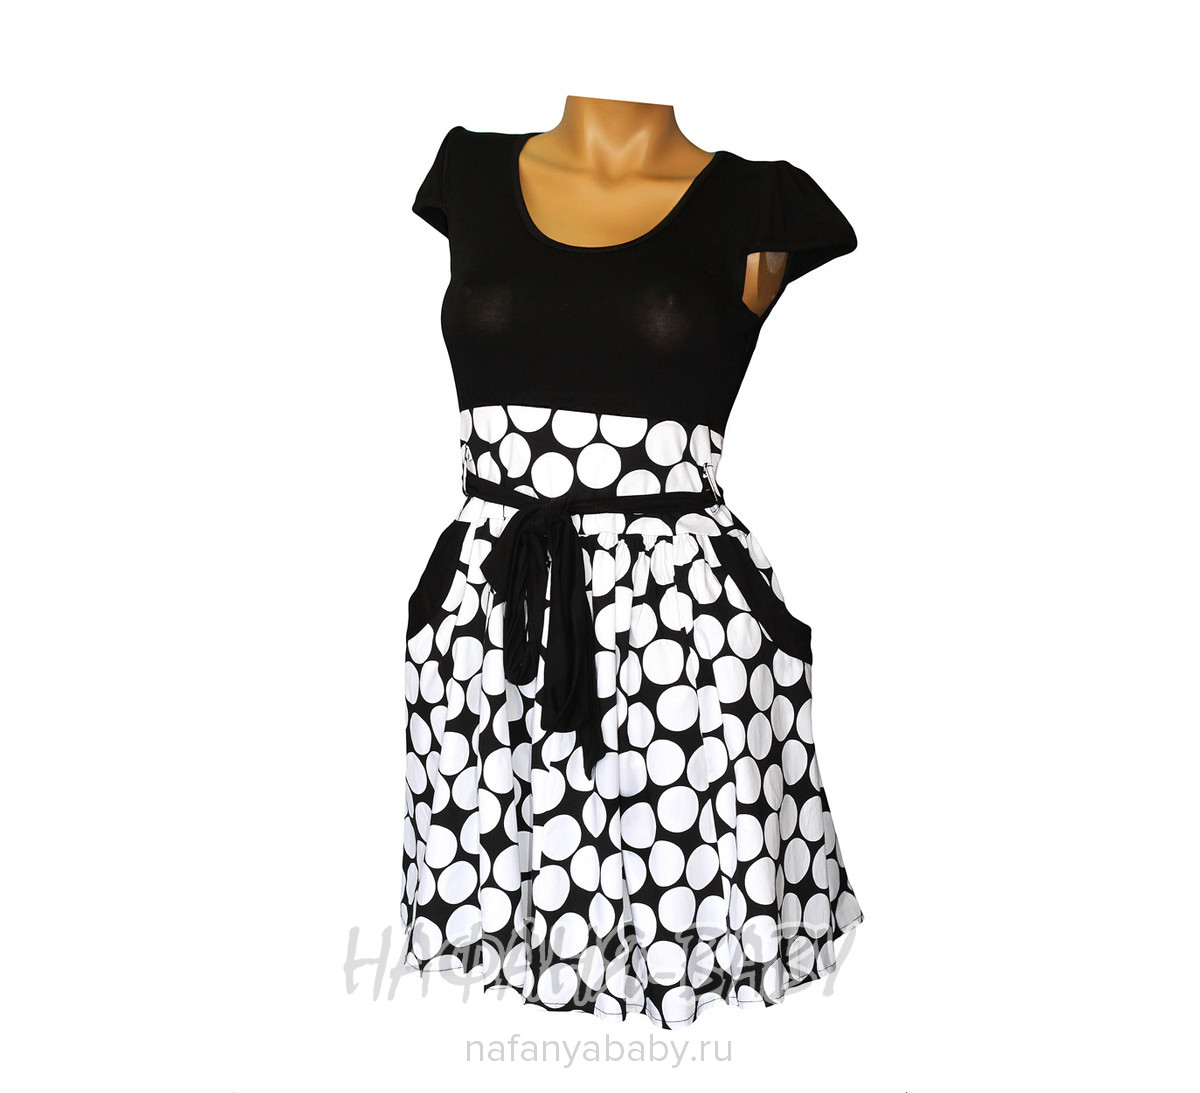 Летнее платье DORIN арт: 7129, 10-15 лет, цвет верх - черный, низ - крупный белый горох, оптом Турция